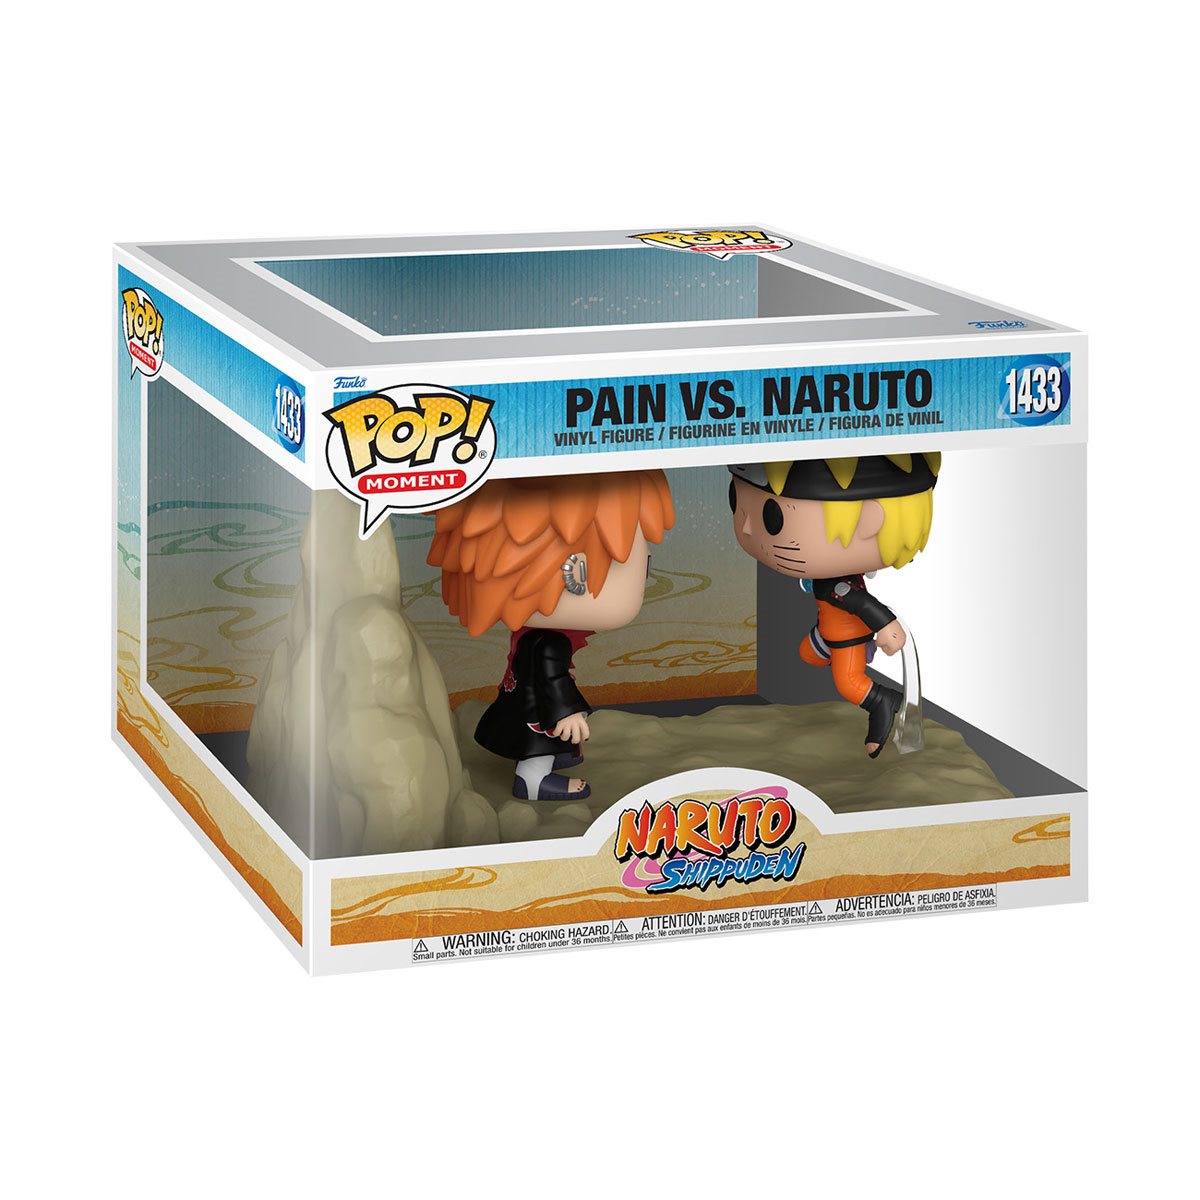 Naruto: Shippuden Pain vs. Naruto Funko Pop! Moment